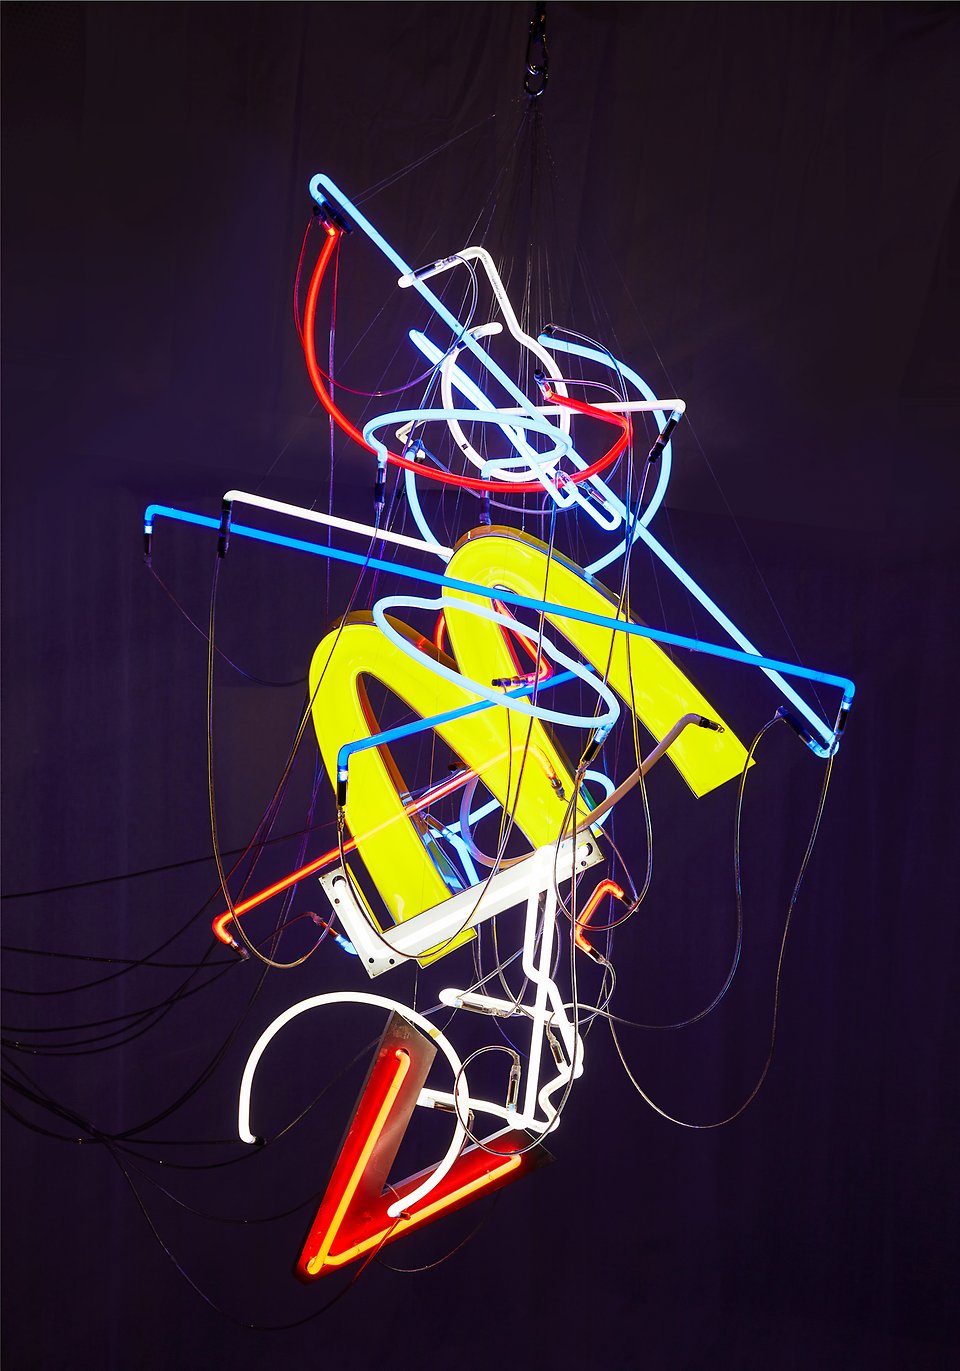 Olika neonskyltar har kopplats ihop och svävar mot mörk bakgrund. Konstverk skapat av Sara Sjöbäck. 